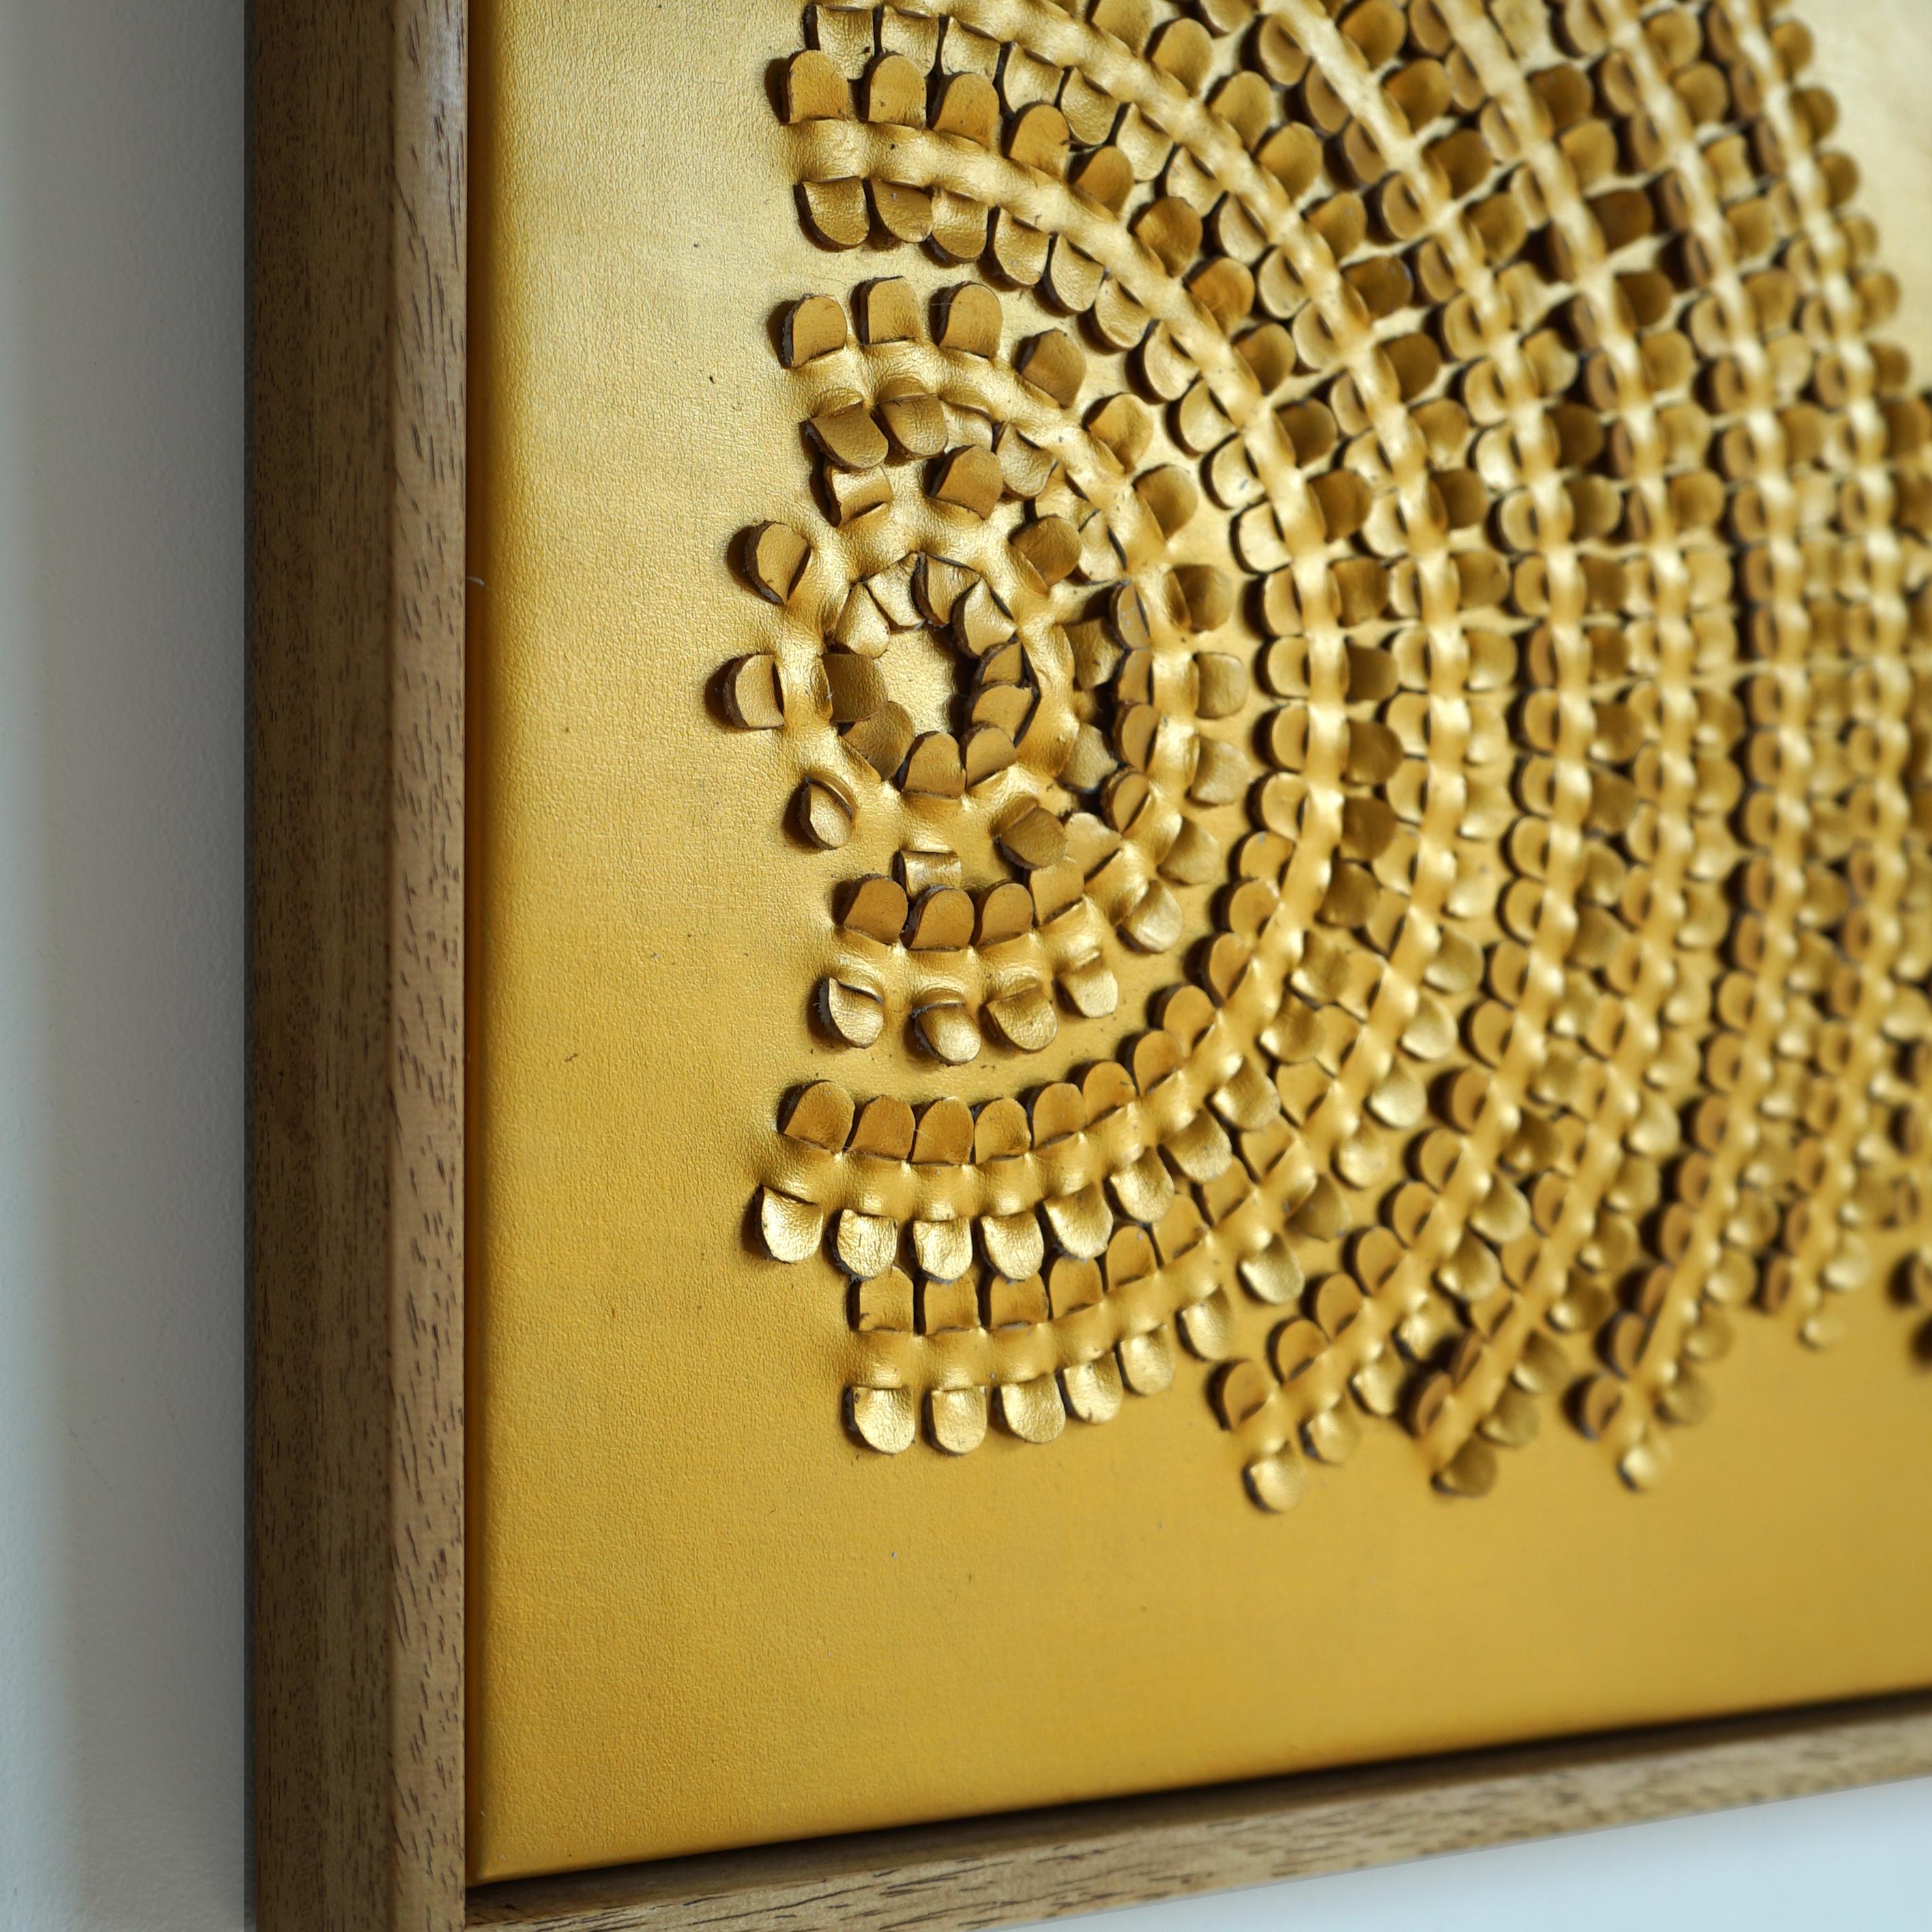 Welle:

Ein skulpturales 3D-Wandkunstwerk, das von Louise Heighes entworfen und aus zwei miteinander verwobenen Schichten goldenen Leders hergestellt wurde.
Die Maße sind 21 x 21 Zoll oder 54 x 54 cm.

Dieses Stück wurde vom Korbflechten